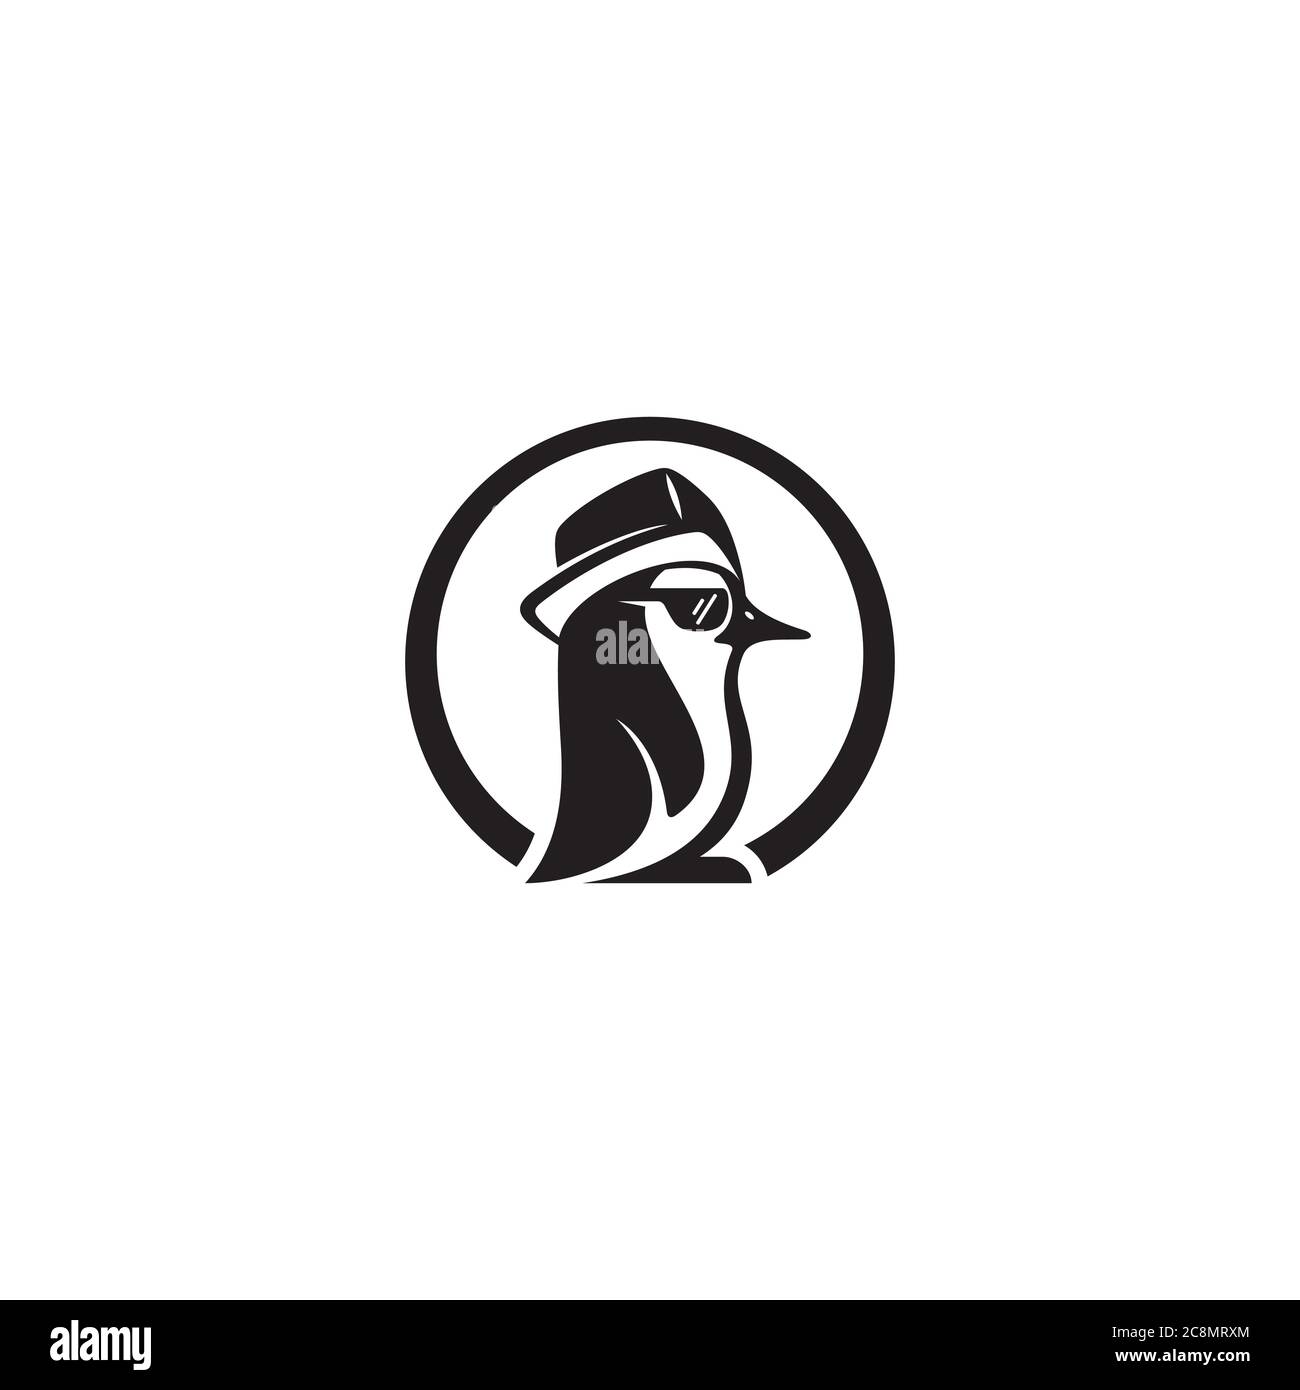 Hip Hop Penguin logo / icon design Stock Vector